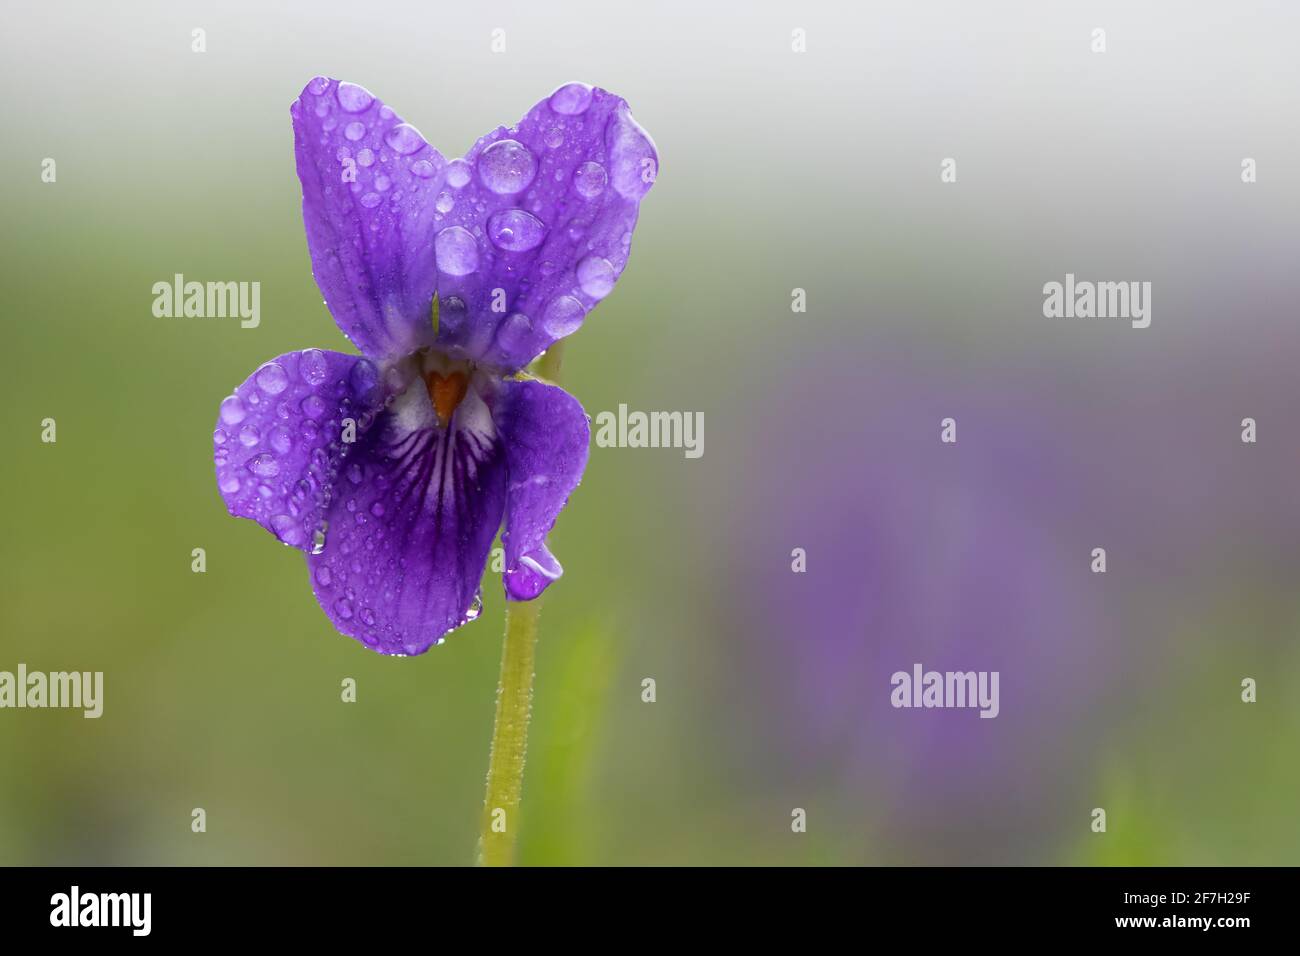 Makroaufnahme eines englischen Veilchens (Viola odorata) Blume bedeckt mit Tau-Tröpfchen Stockfoto